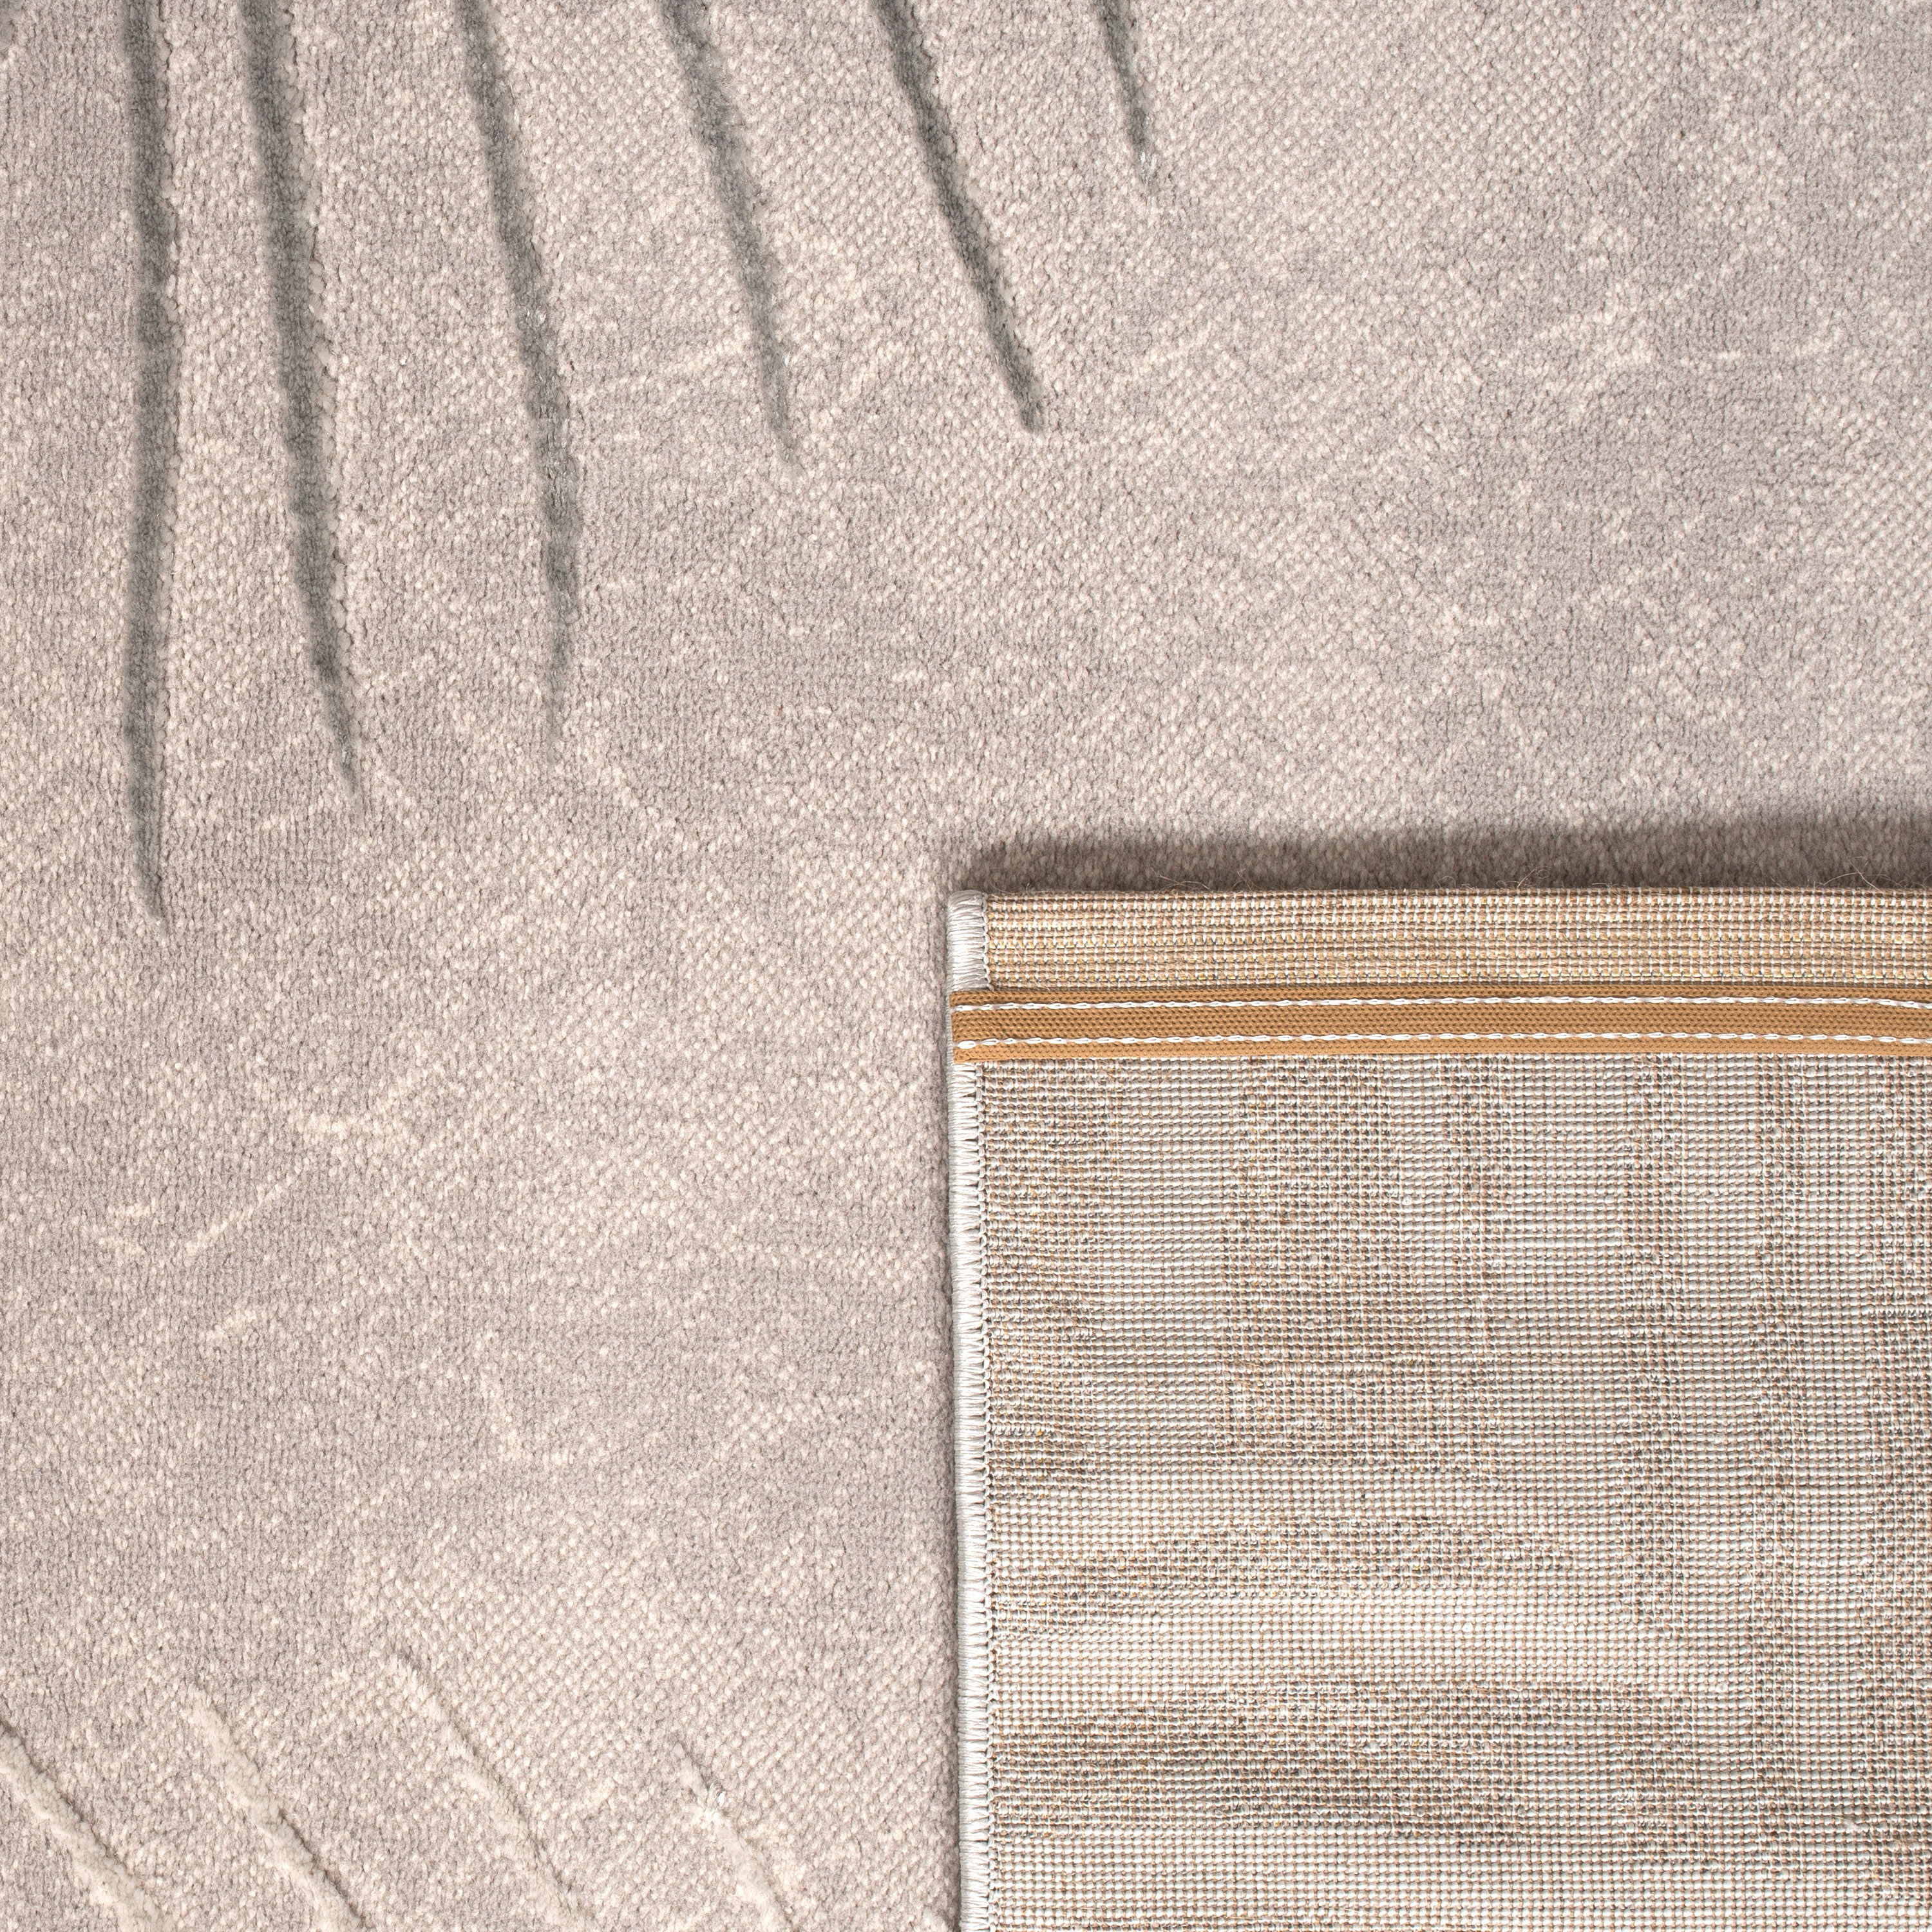 Teppich Esszimmer Palmenmuster Floral Modern Grau Modern